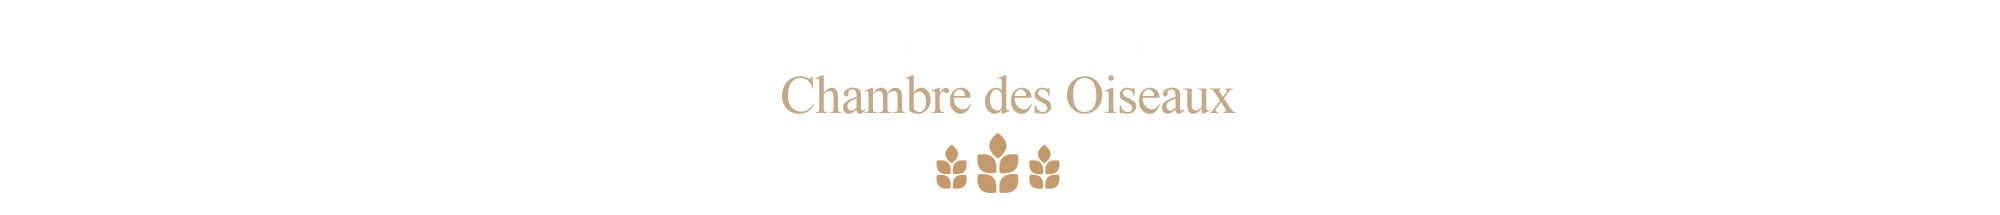 Chambre-des-oiseaux-la-Castellane